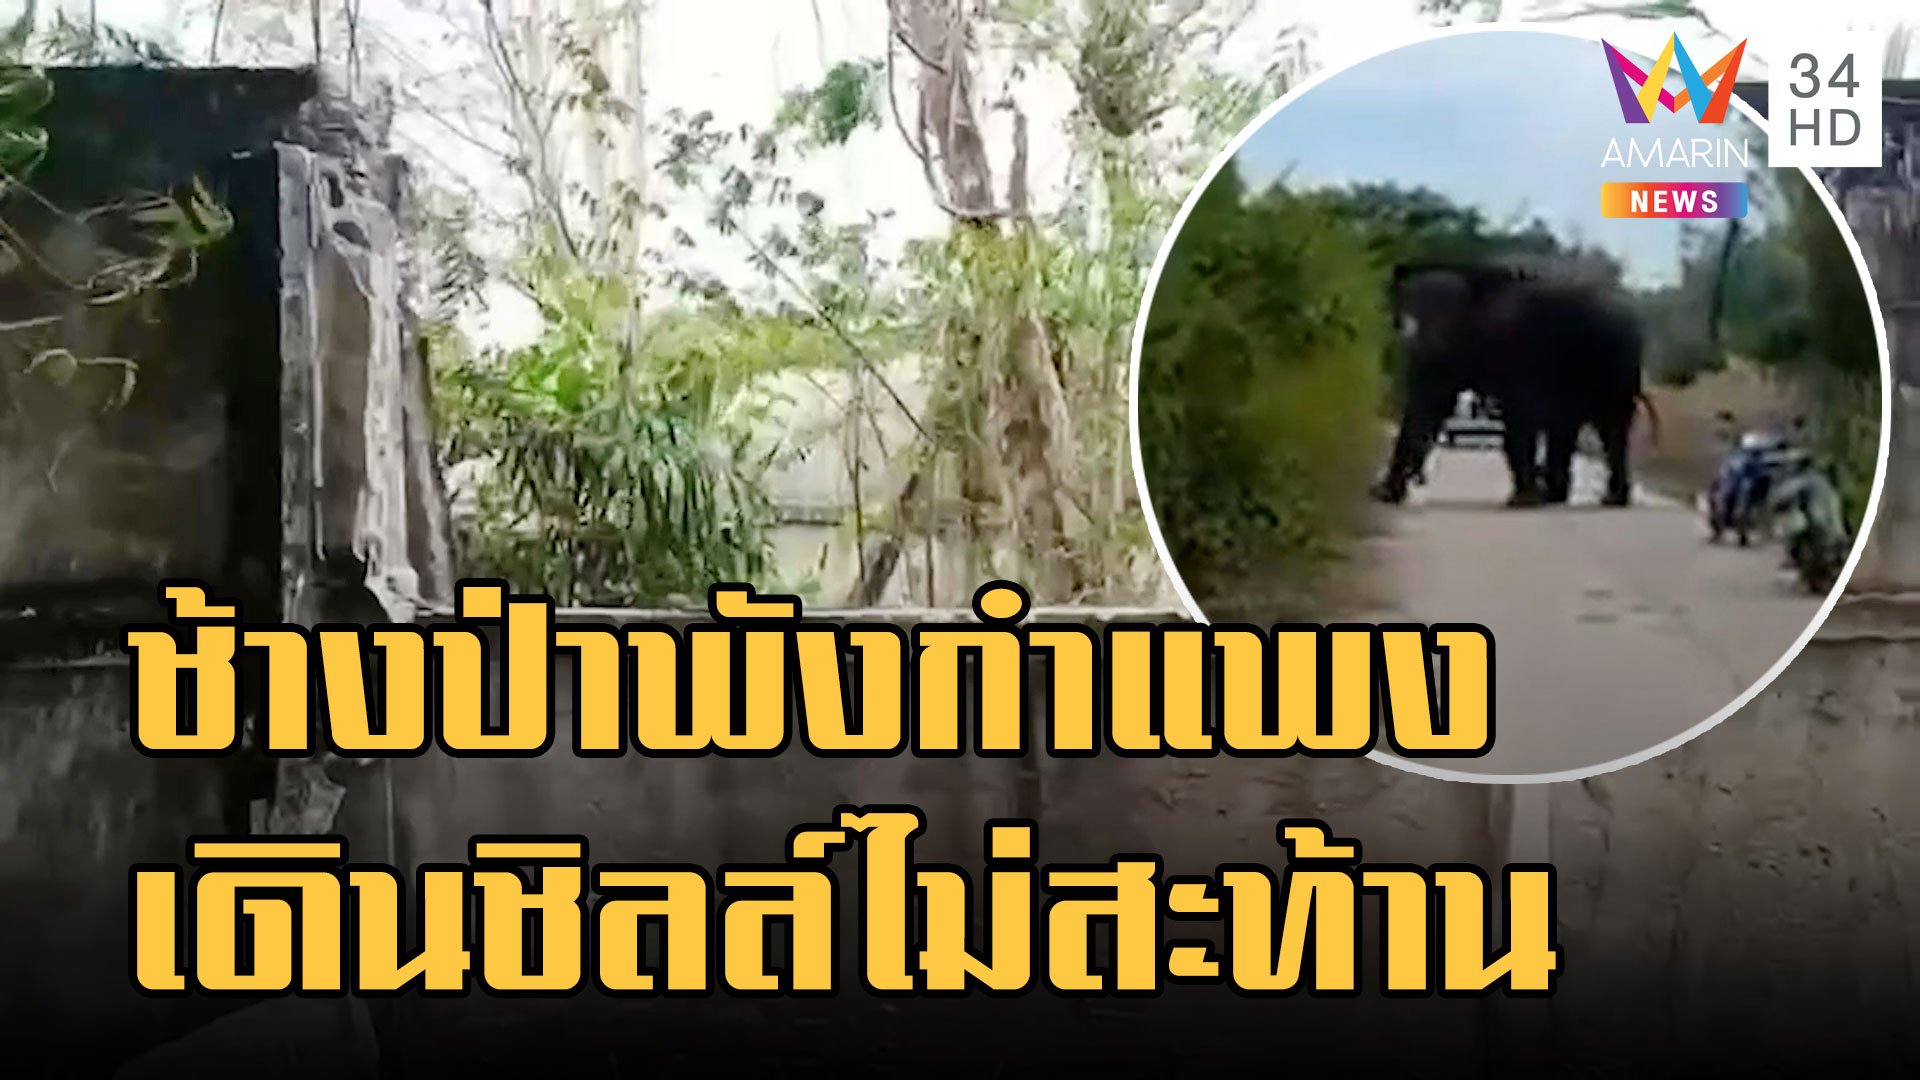 พี่ใหญ่ ช้างป่าอ่างฤาไนพังกำแพงบ้านไม่สะทกสะท้าน | ข่าวอรุณอมรินทร์ | 3 ม.ค. 66 | AMARIN TVHD34